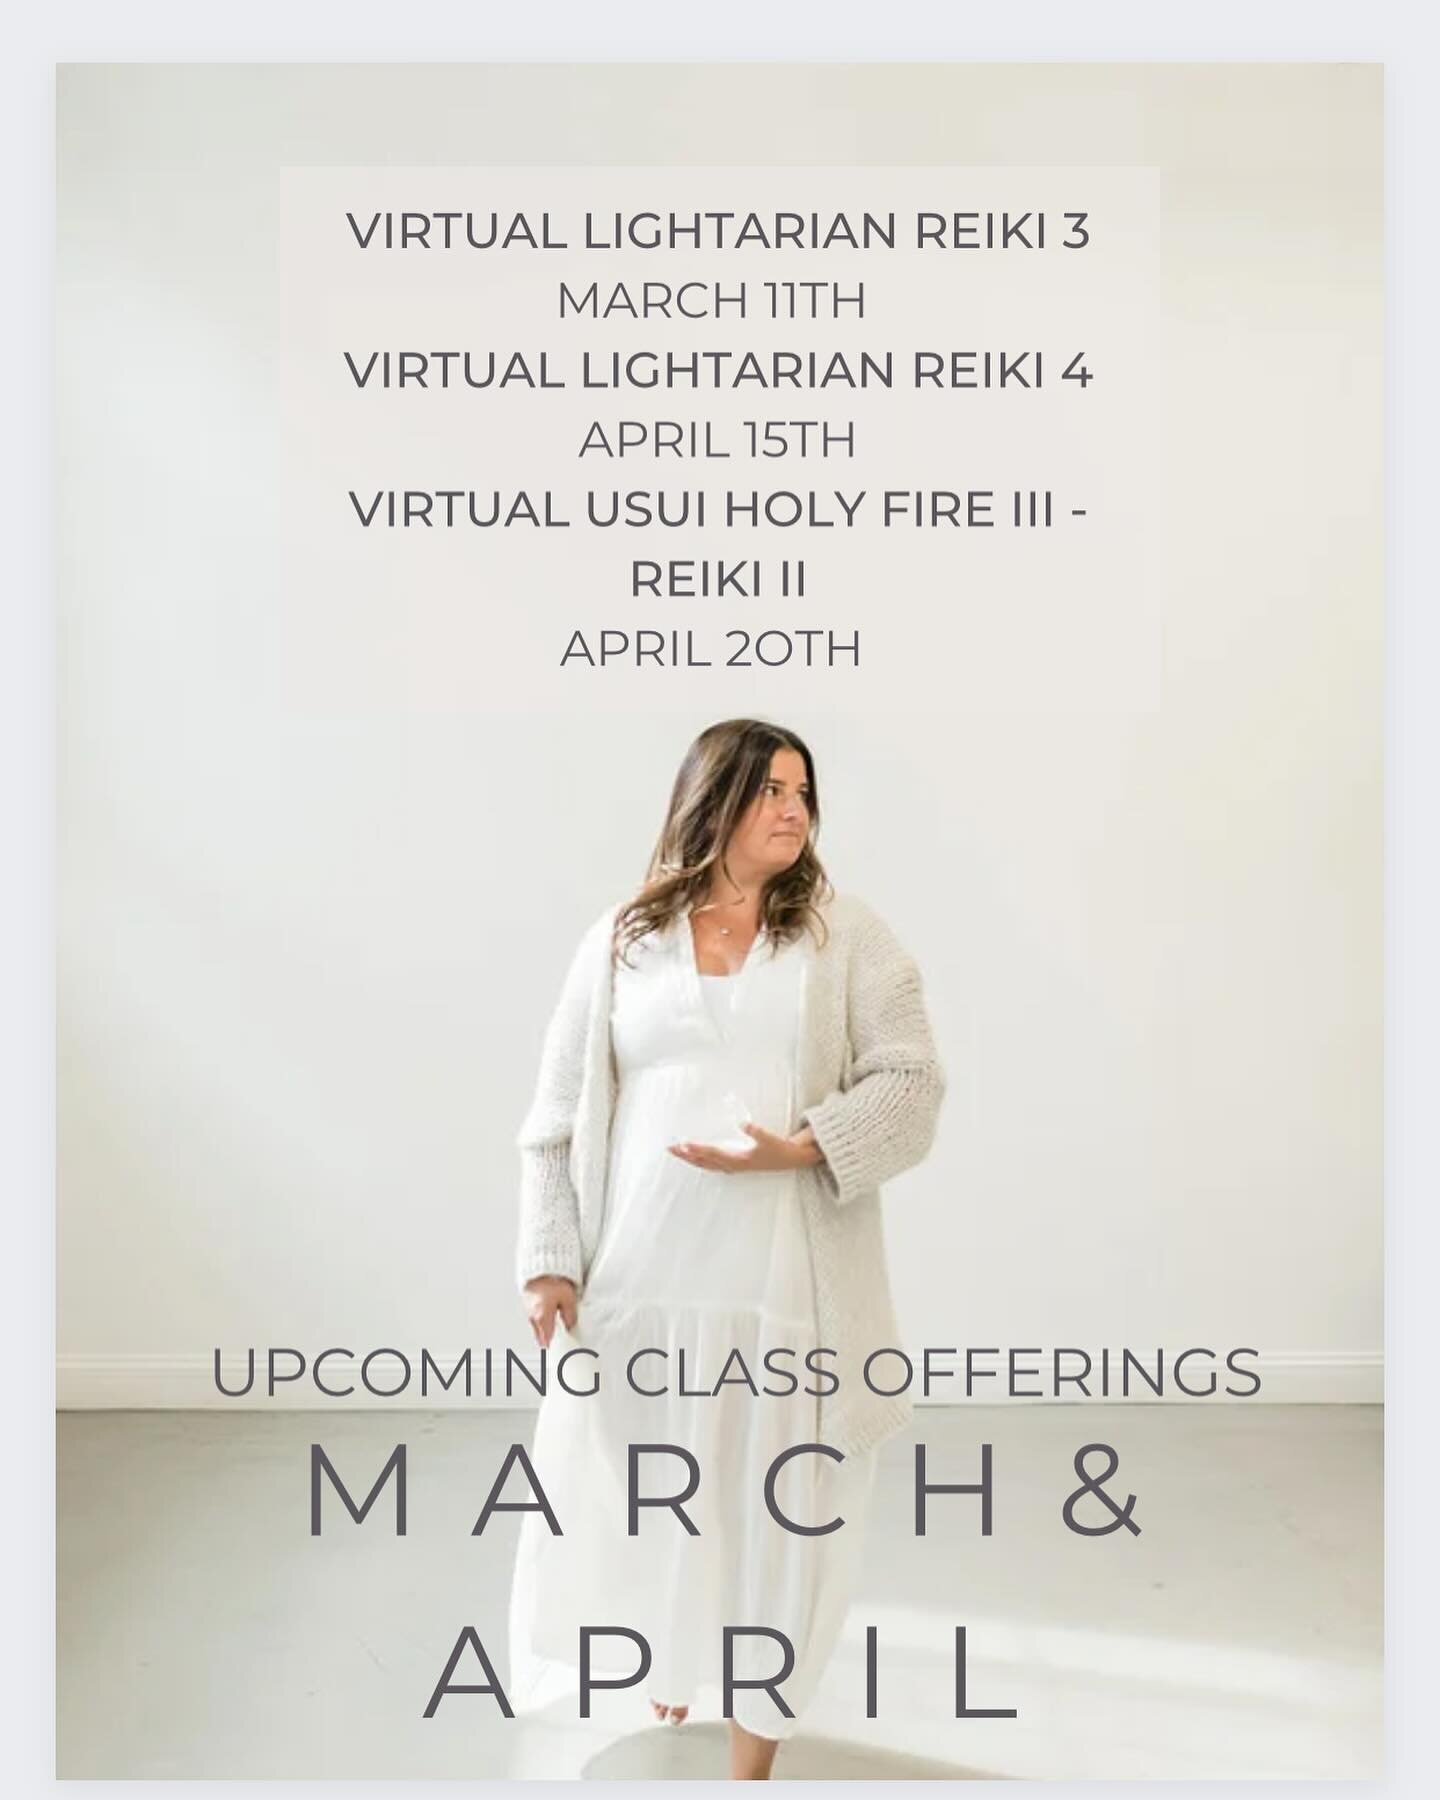 Upcoming classes! 

#reiki #lightarianreiki #virtualreikitraining